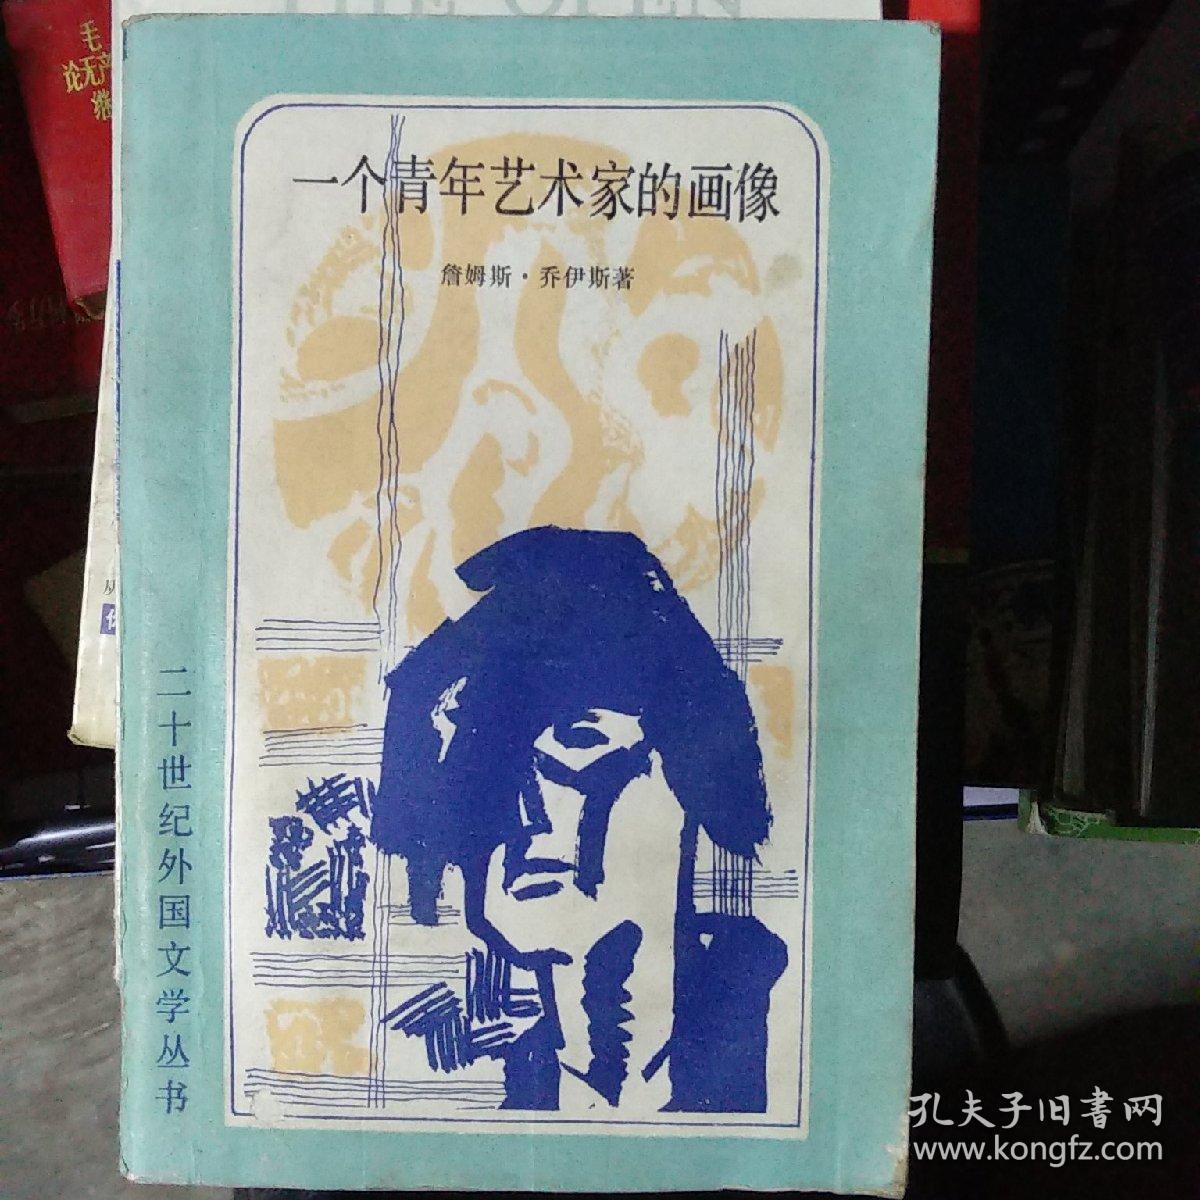 一个青年艺术家的画像 孔夫子旧书网